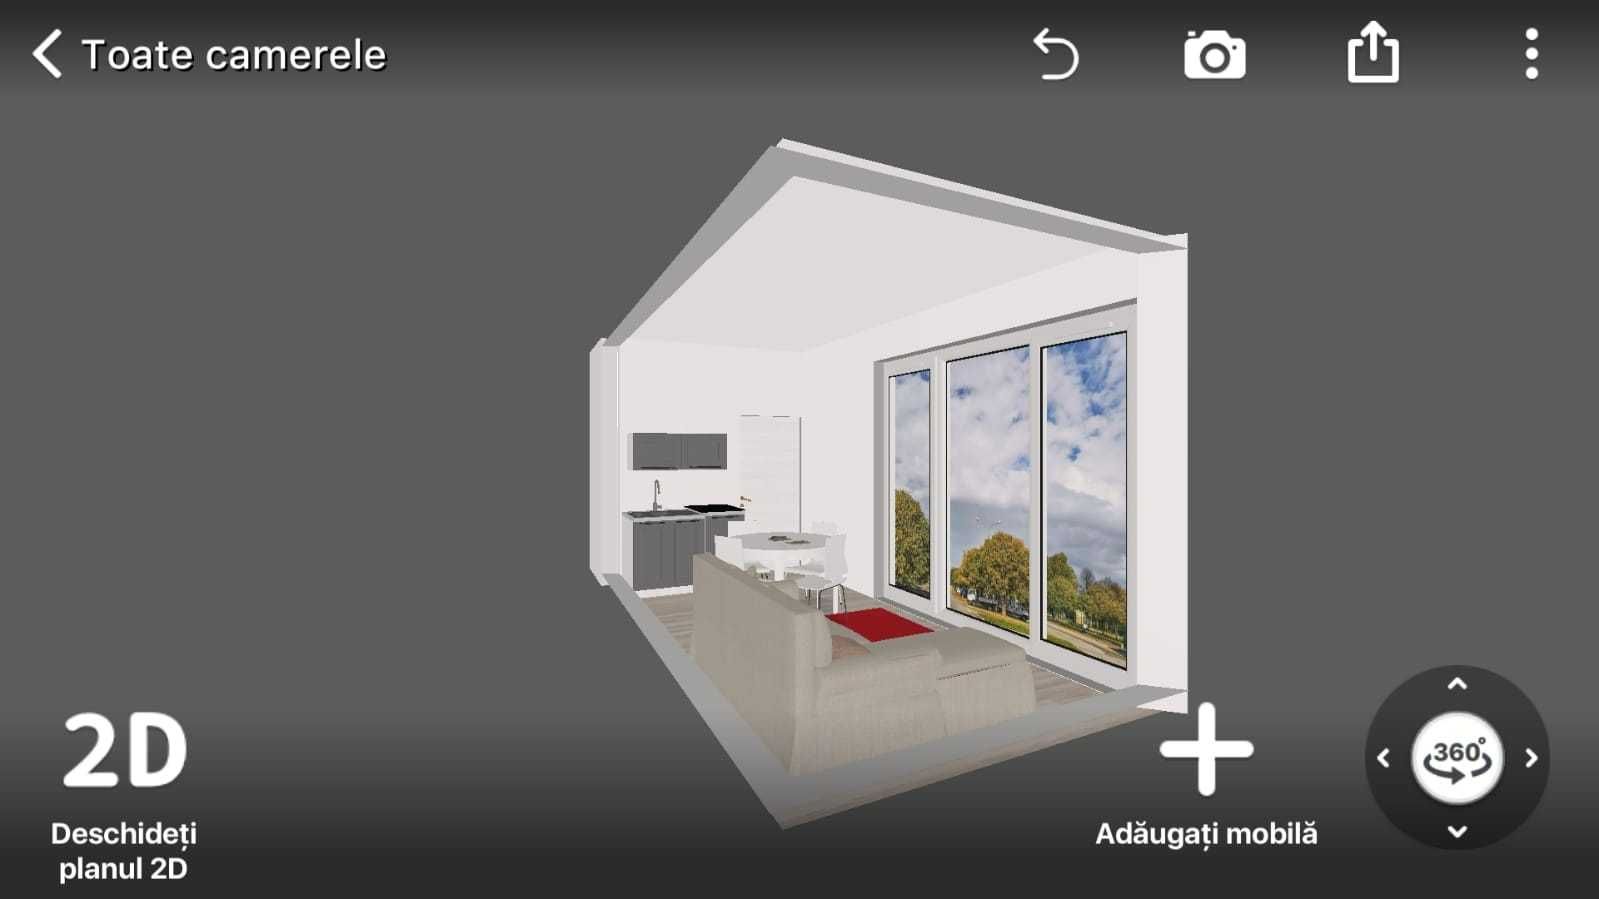 Vand Casuta mobila TINY HOUSE (Guest house / Airbnb)